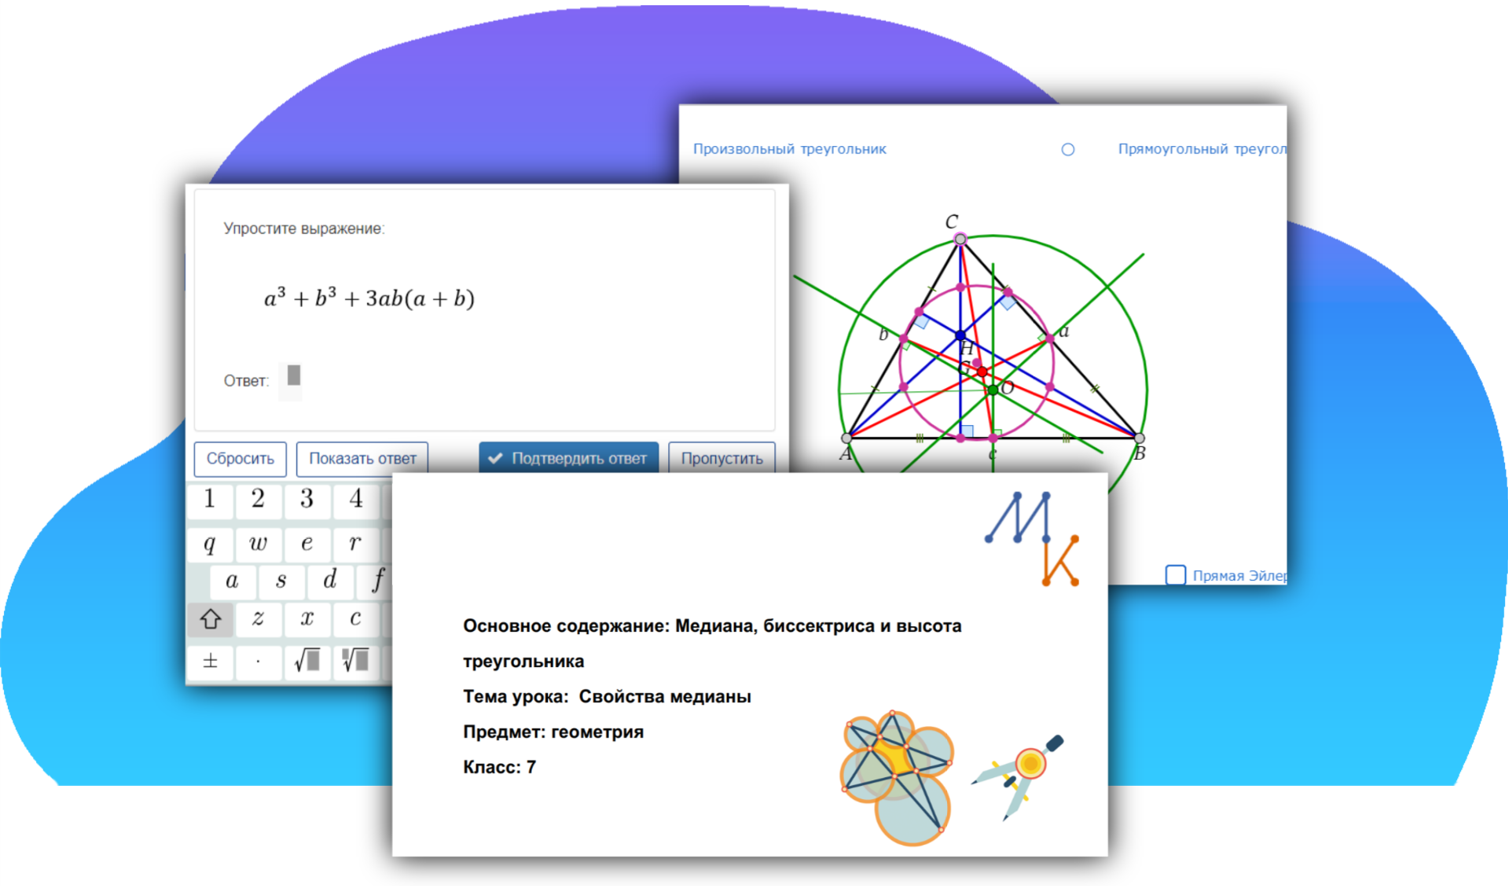 Технологические карты проекта «Динамическая математика» в системе «1С:Образование»: новые возможности для учителя и ученика